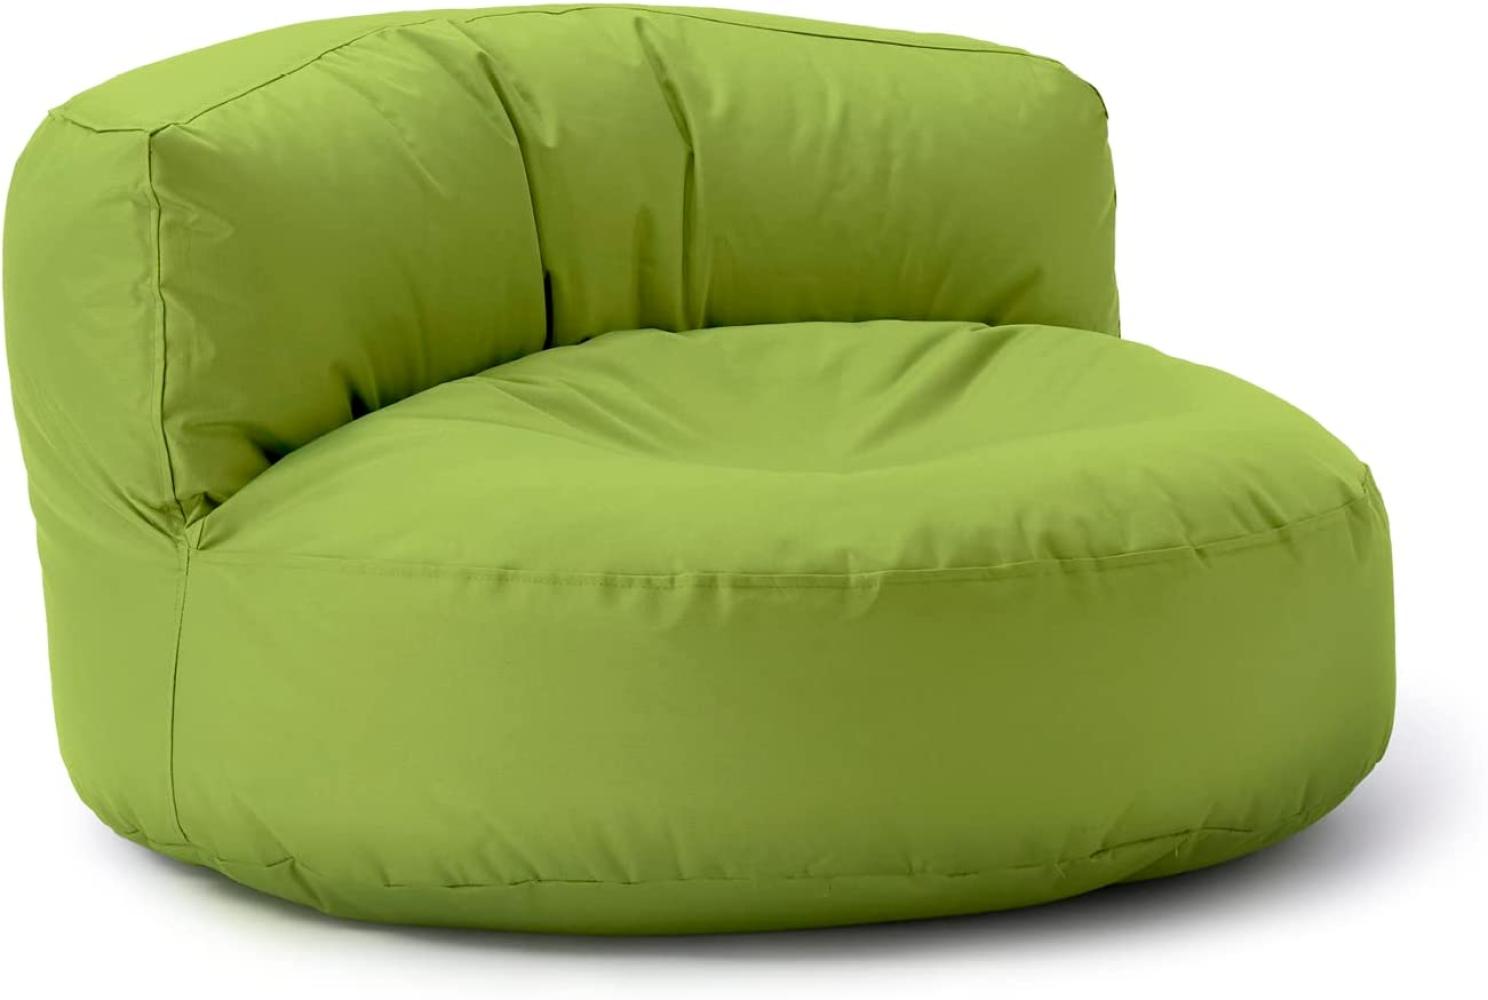 Lumaland Outdoor Sitzsack-Lounge, Rundes Sitzsack-Sofa für draußen, 320l Füllung, 90 x 50 cm, Grün Bild 1